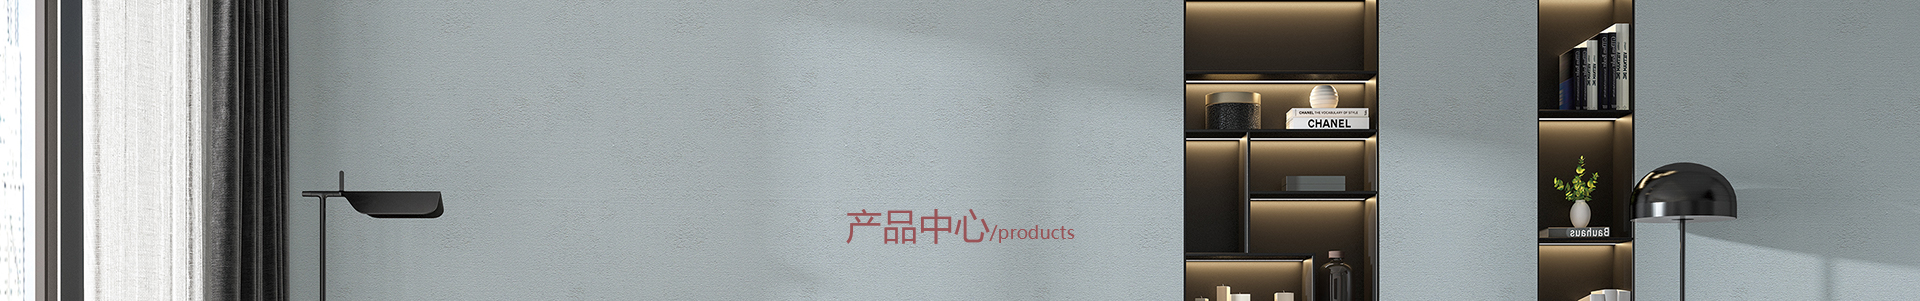 产品banner